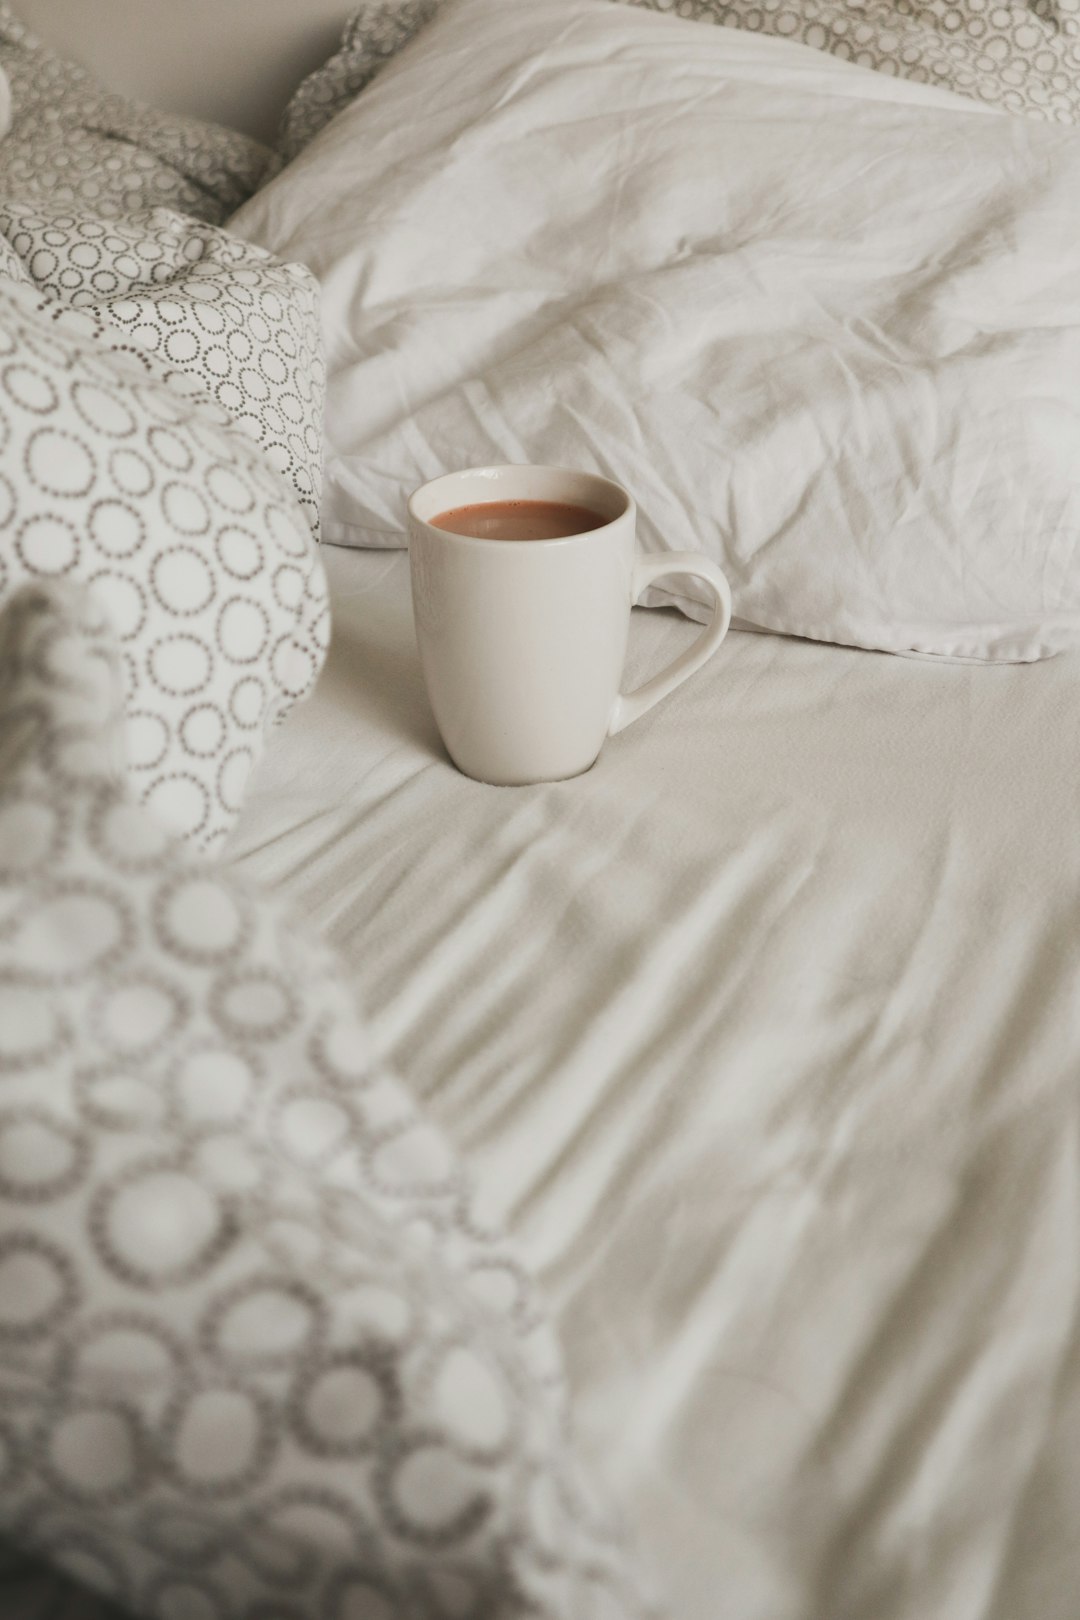 full white ceramic mug on bed